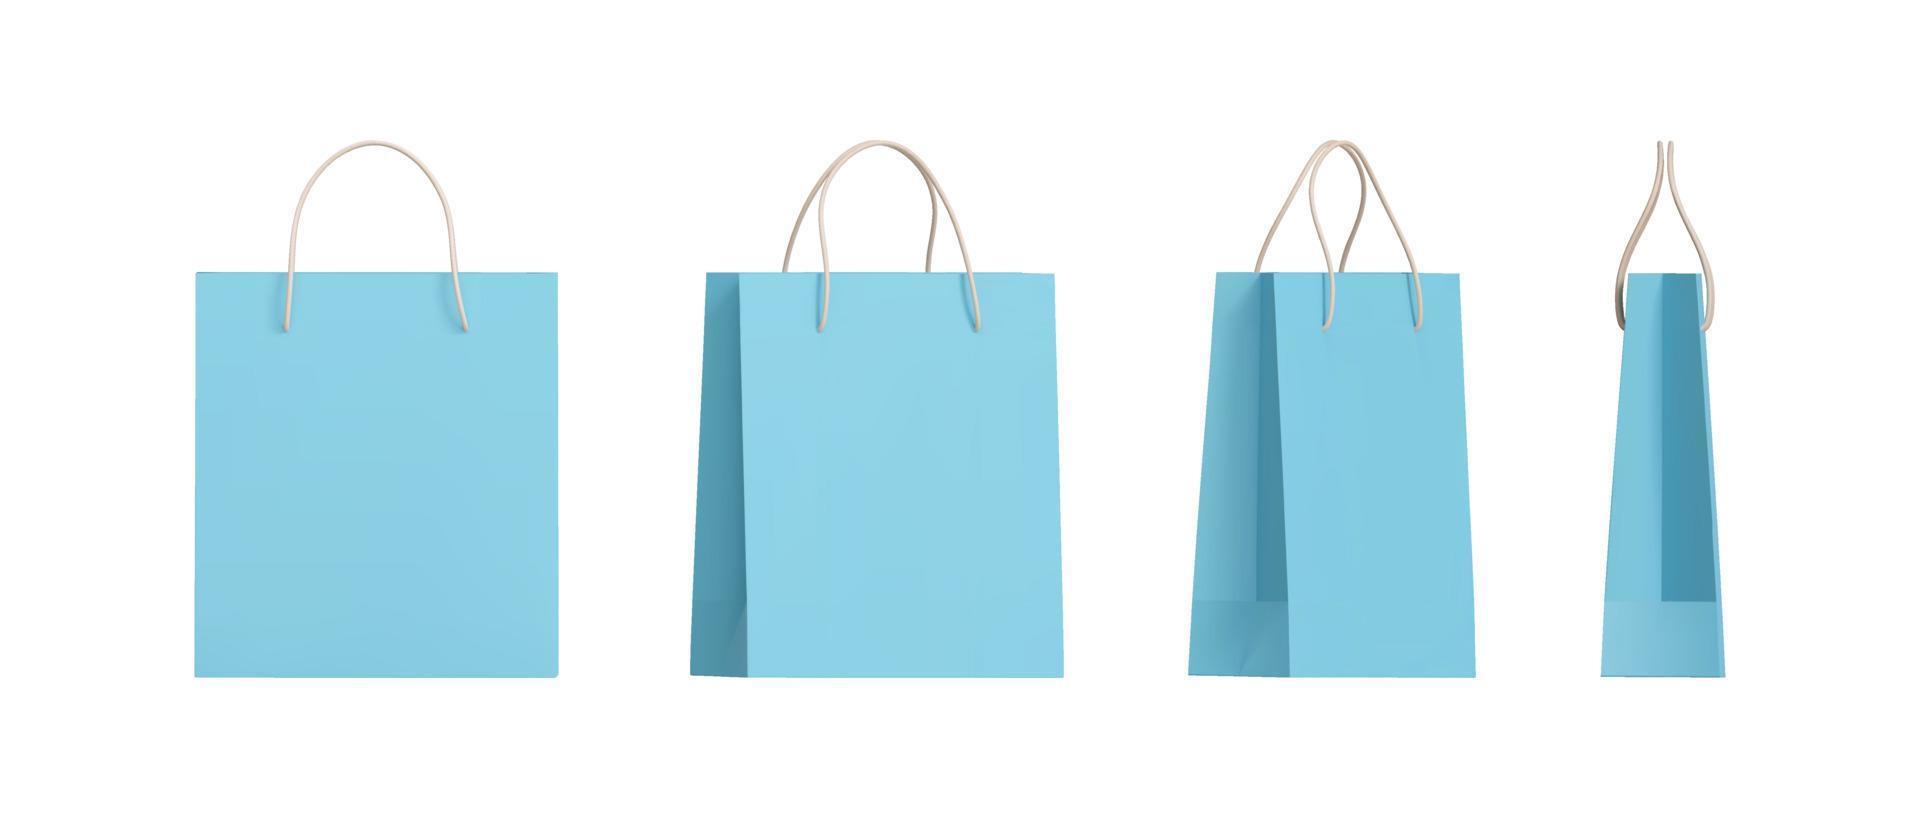 conjunto de embalagens de sacos de compras de papel azul 3d com ângulos diferentes. vista frontal e lateral da embalagem de compra de varejo, maquete em branco. ilustração vetorial realista isolada vetor